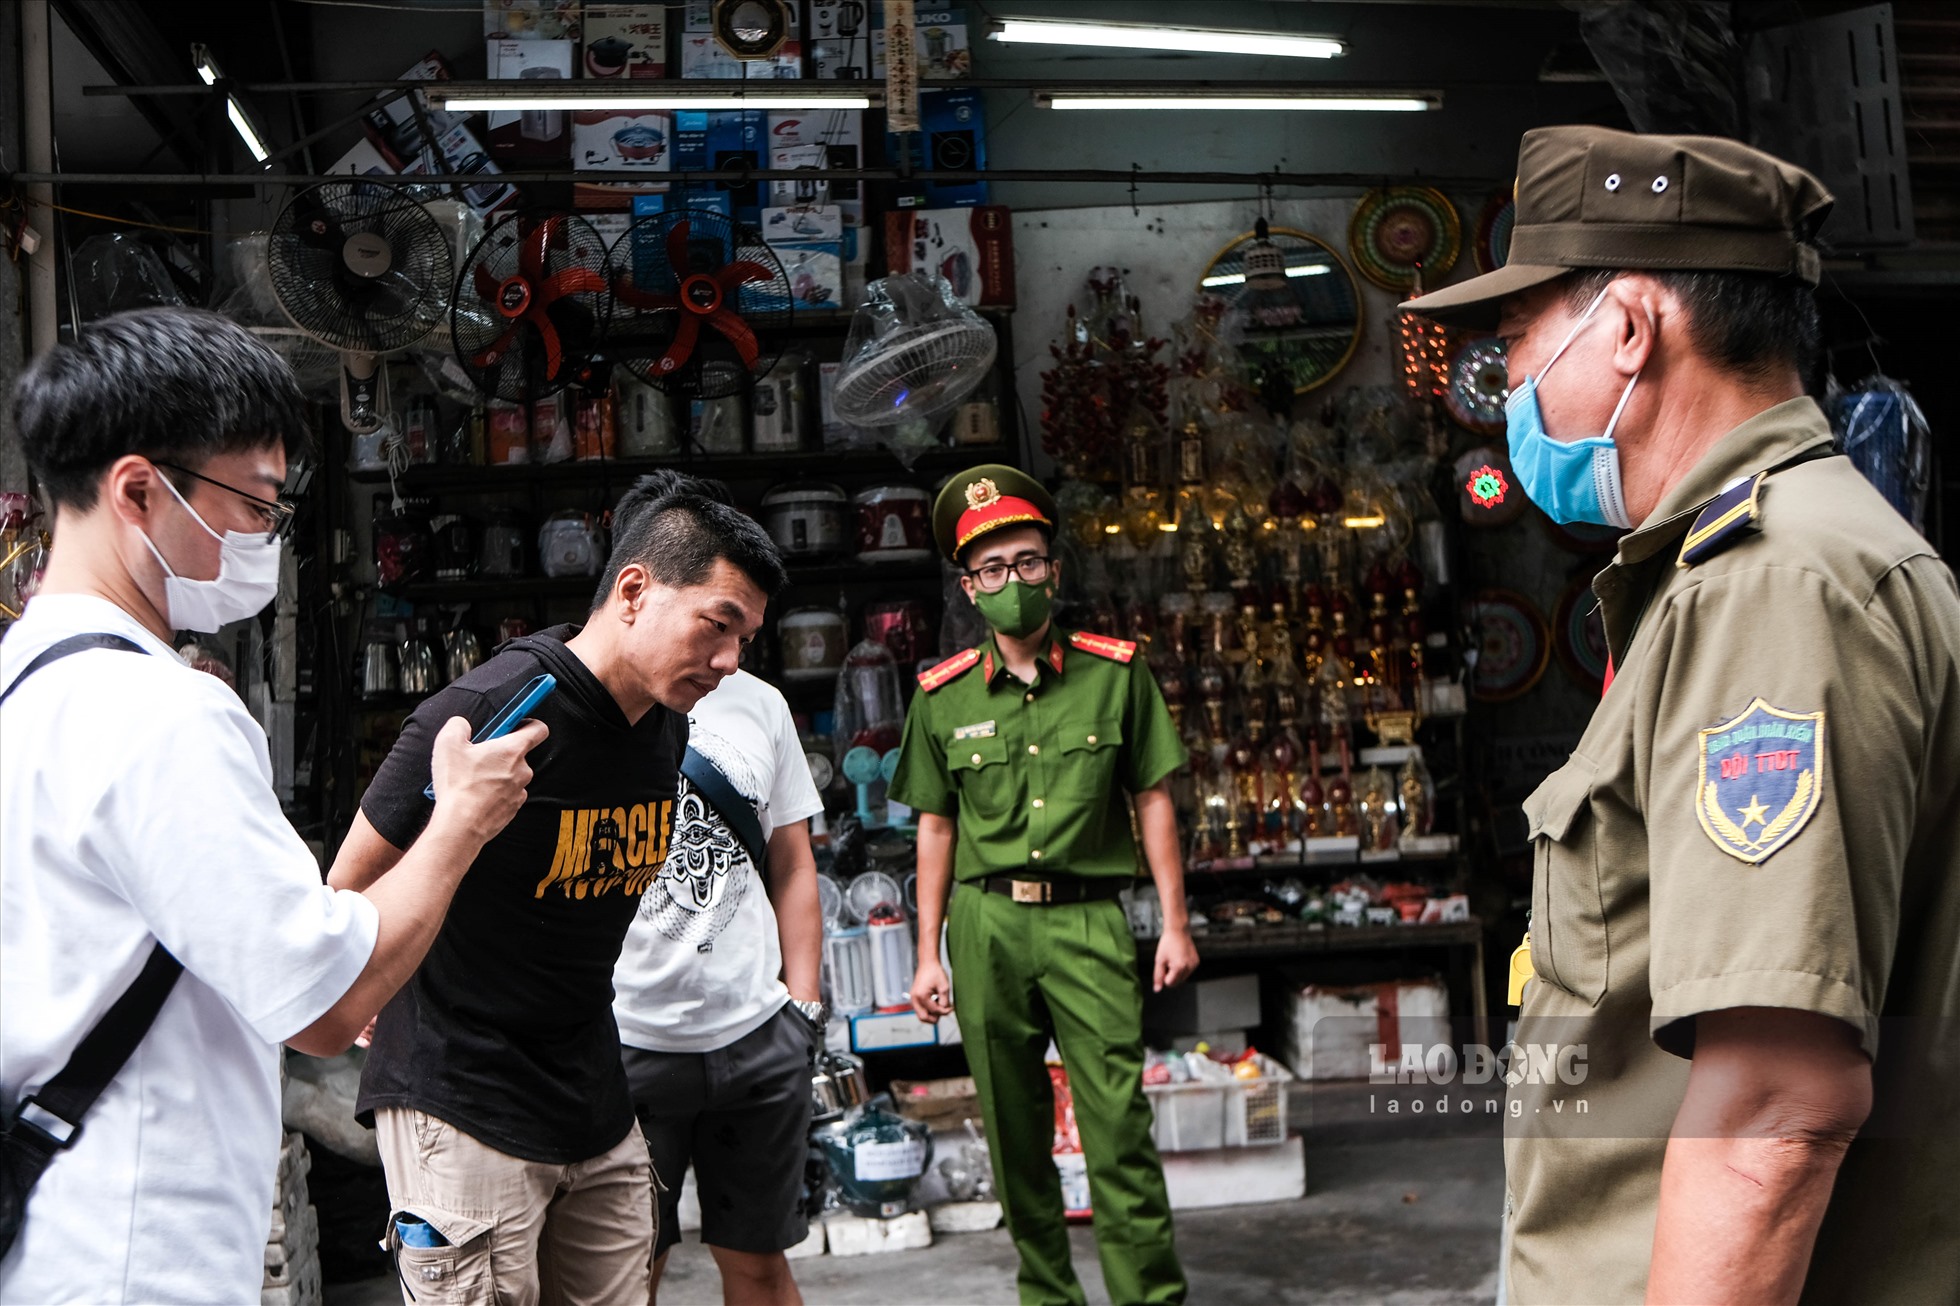 Theo ghi nhận của phóng viên, hai ngày sau khi phố đường tàu Phùng Hưng đóng cửa, tại đây vẫn xuất hiện nhiều khách du lịch không nắm được tình hình nên vẫn đến đây với hi vọng được chụp ảnh check – in với nơi này.